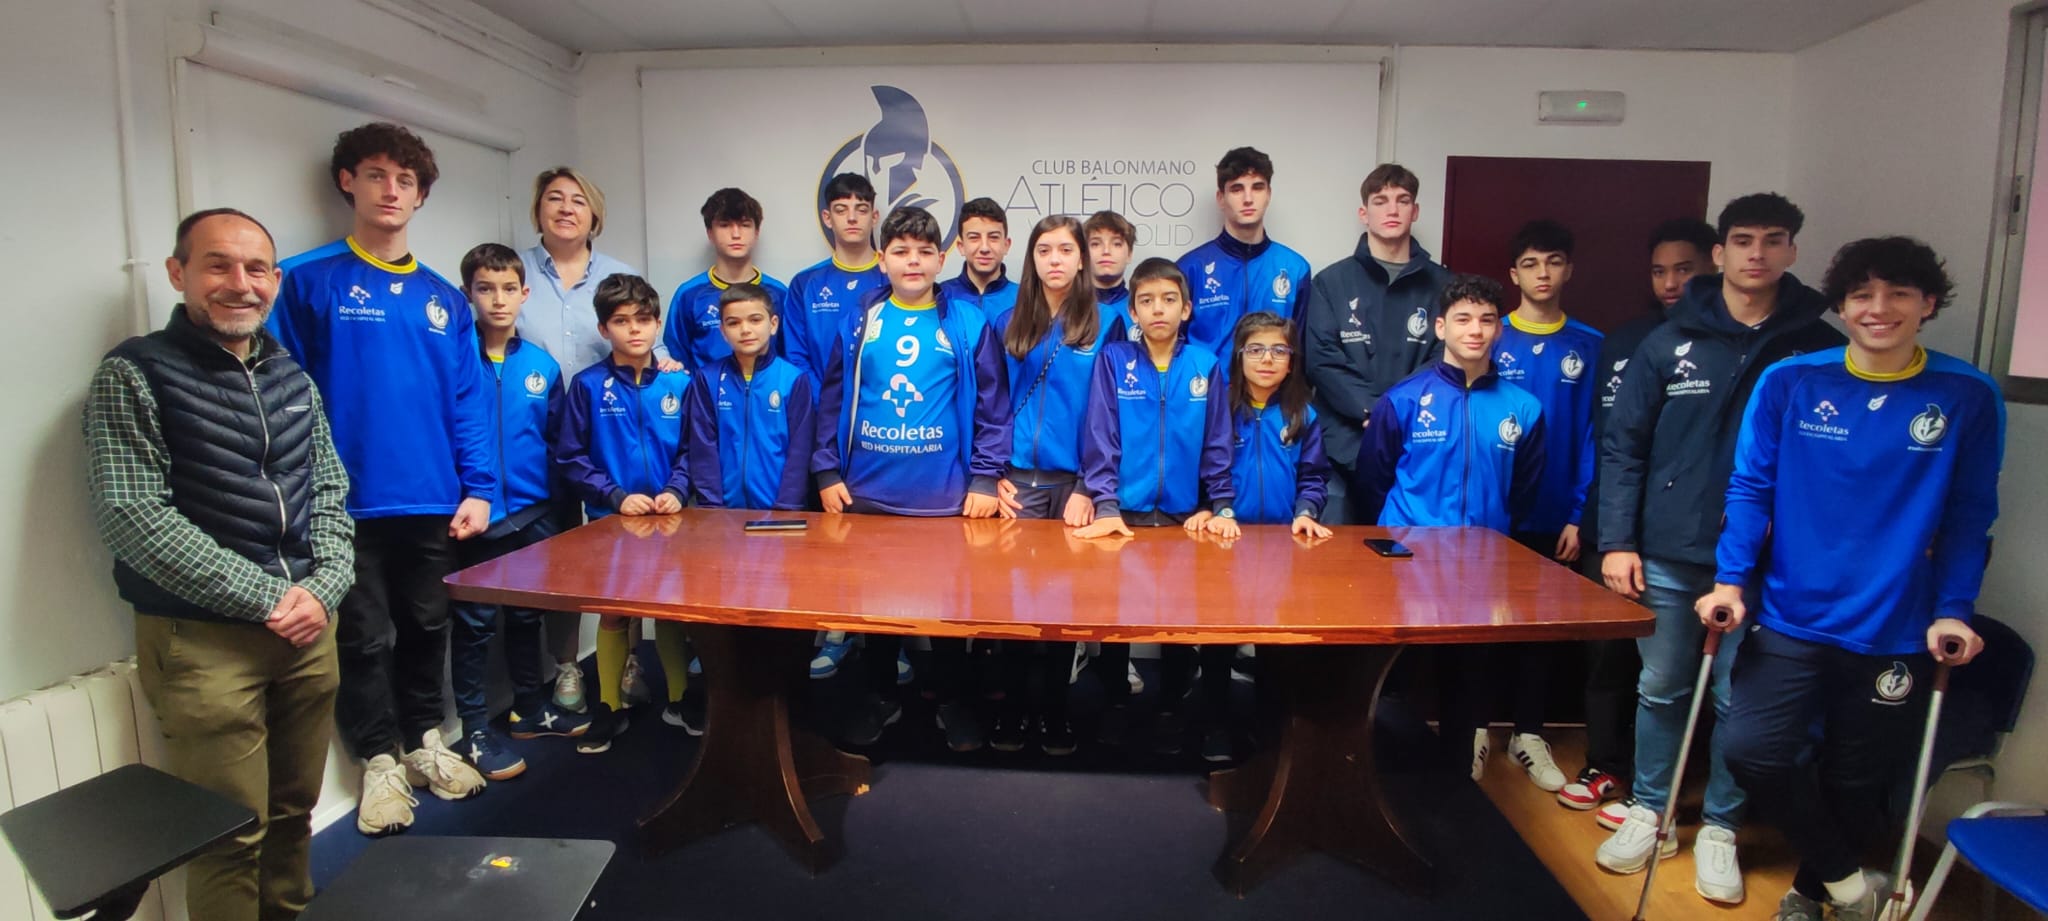 El Recoletas Atlético Valladolid constituye el Consejo de Infancia y Adolescencia